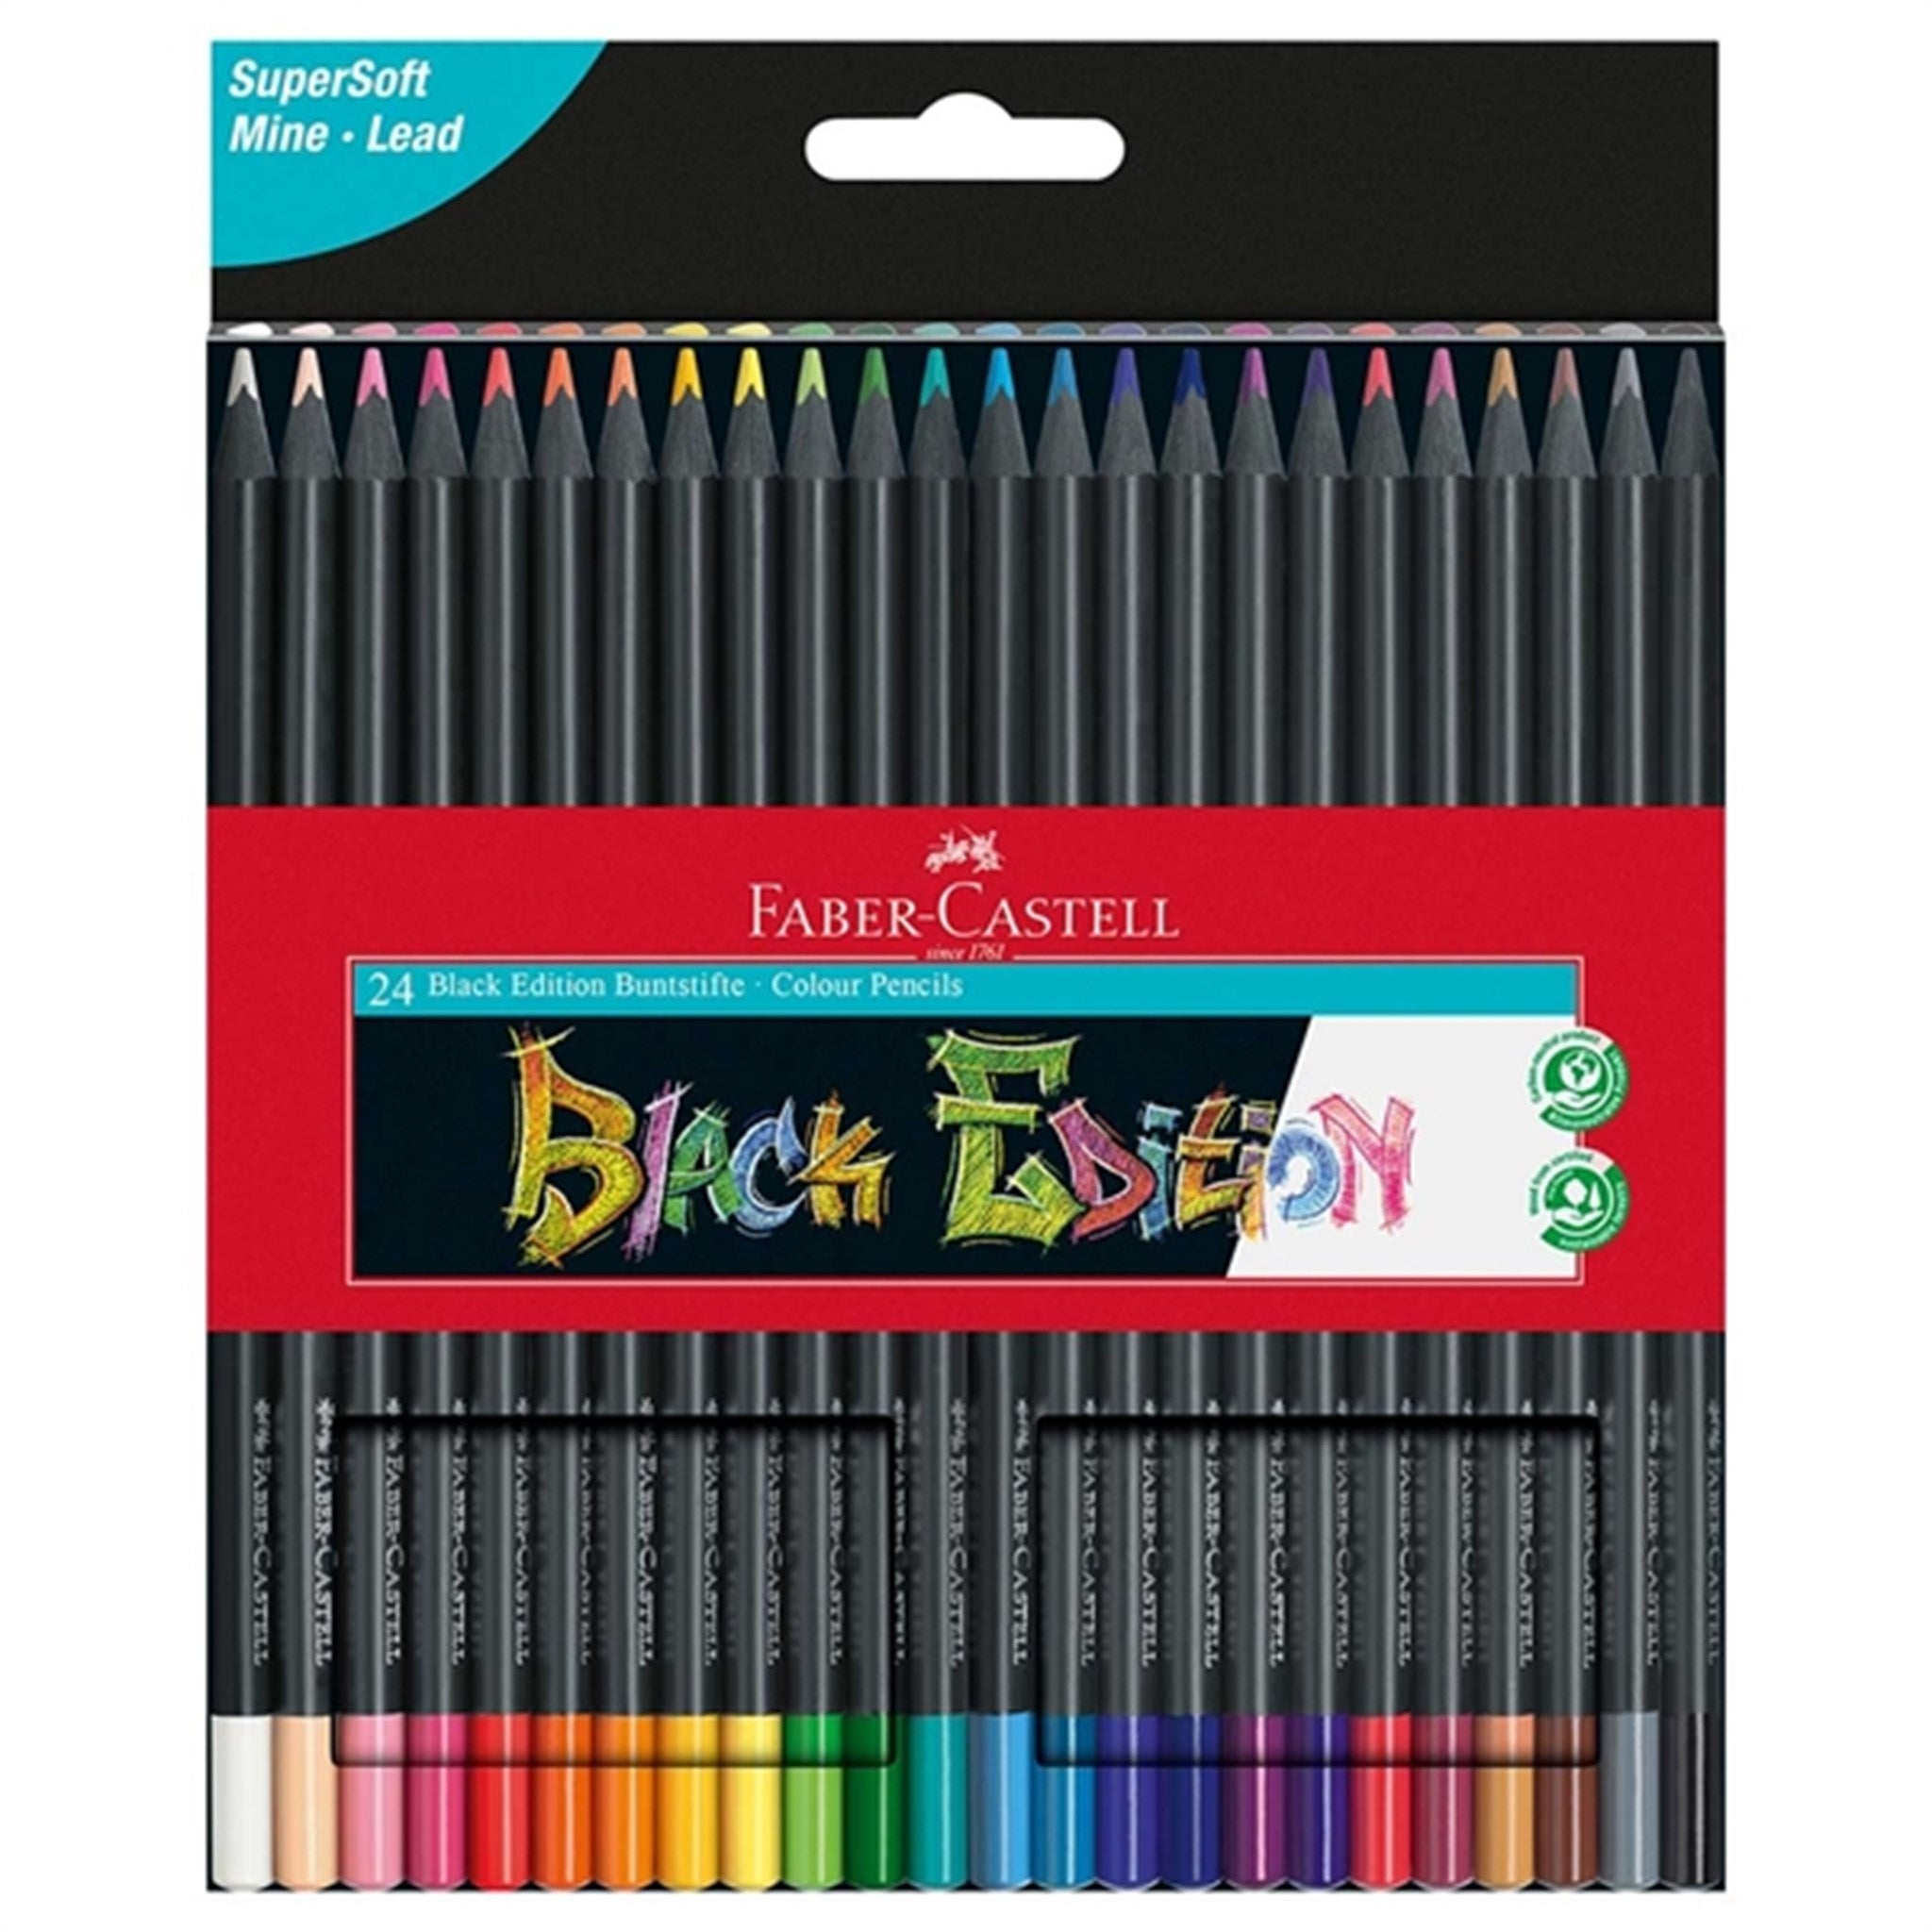 Faber Castell Black Edition 24 Colour Pencils